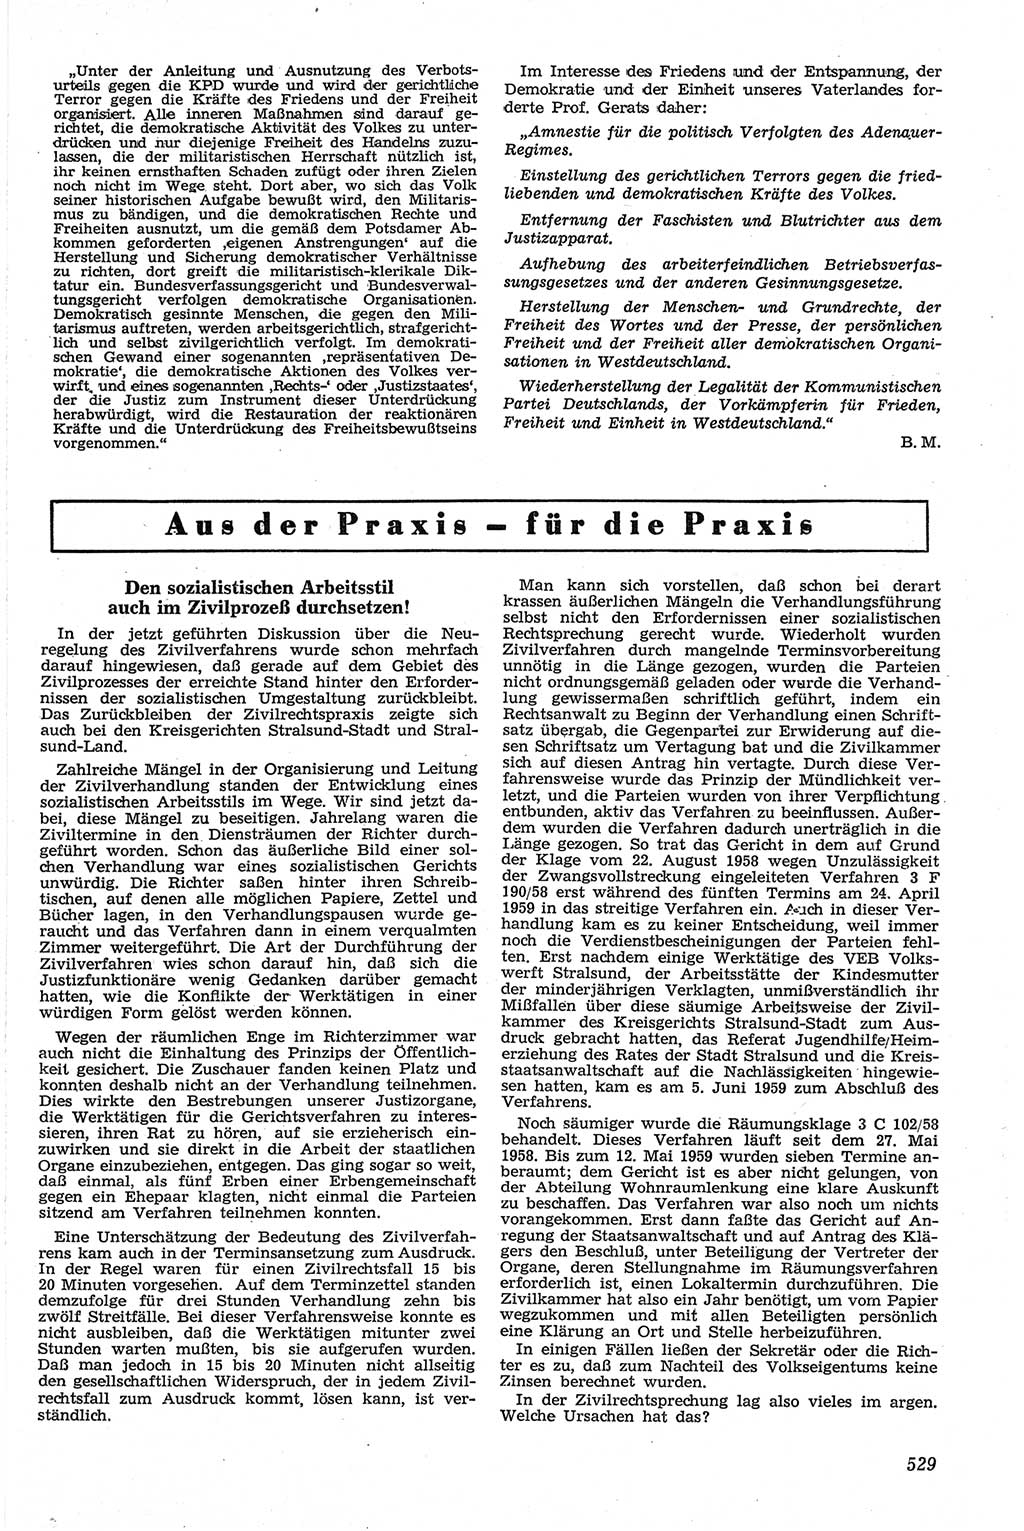 Neue Justiz (NJ), Zeitschrift für Recht und Rechtswissenschaft [Deutsche Demokratische Republik (DDR)], 13. Jahrgang 1959, Seite 529 (NJ DDR 1959, S. 529)